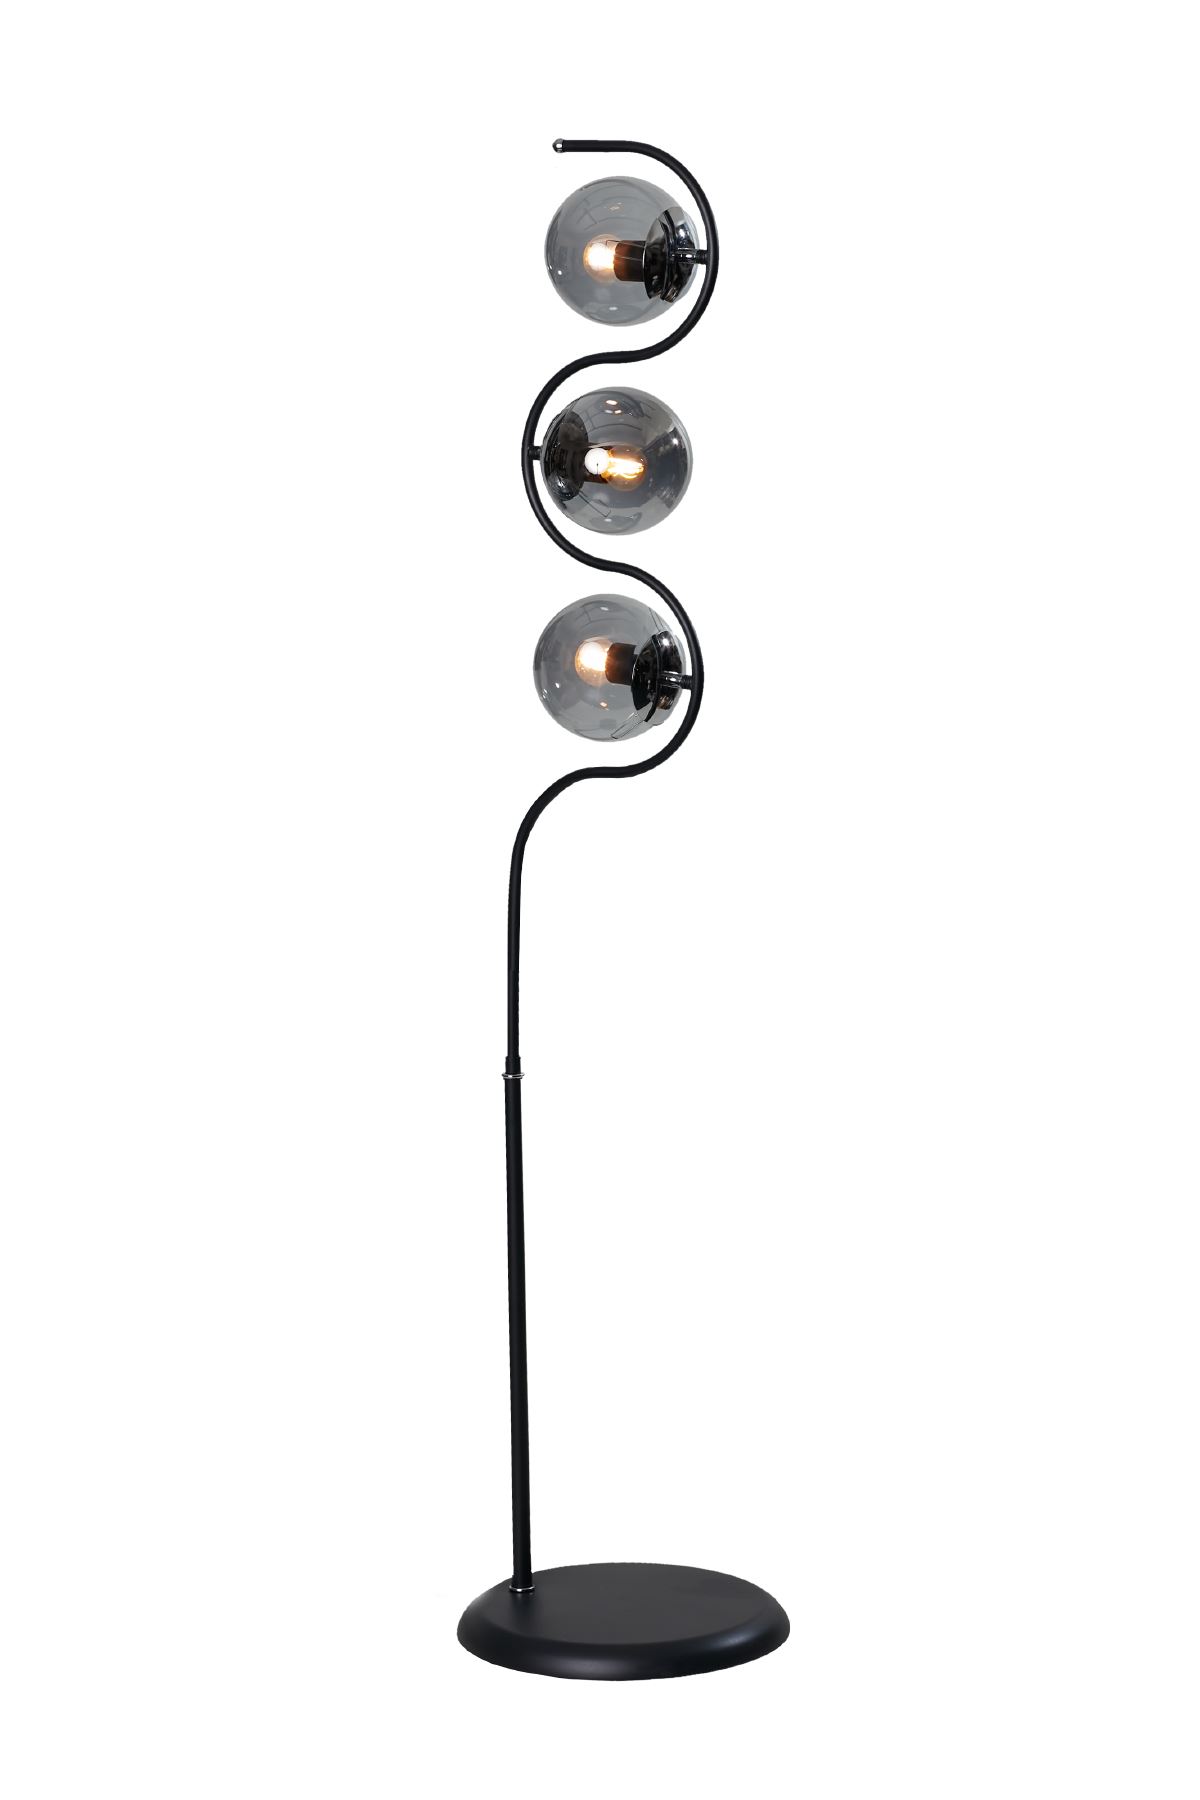 Roxy Siyah-Krom Metal Gövde Füme Camlı Tasarım Lüx Yerden Aydınlatma Lambader